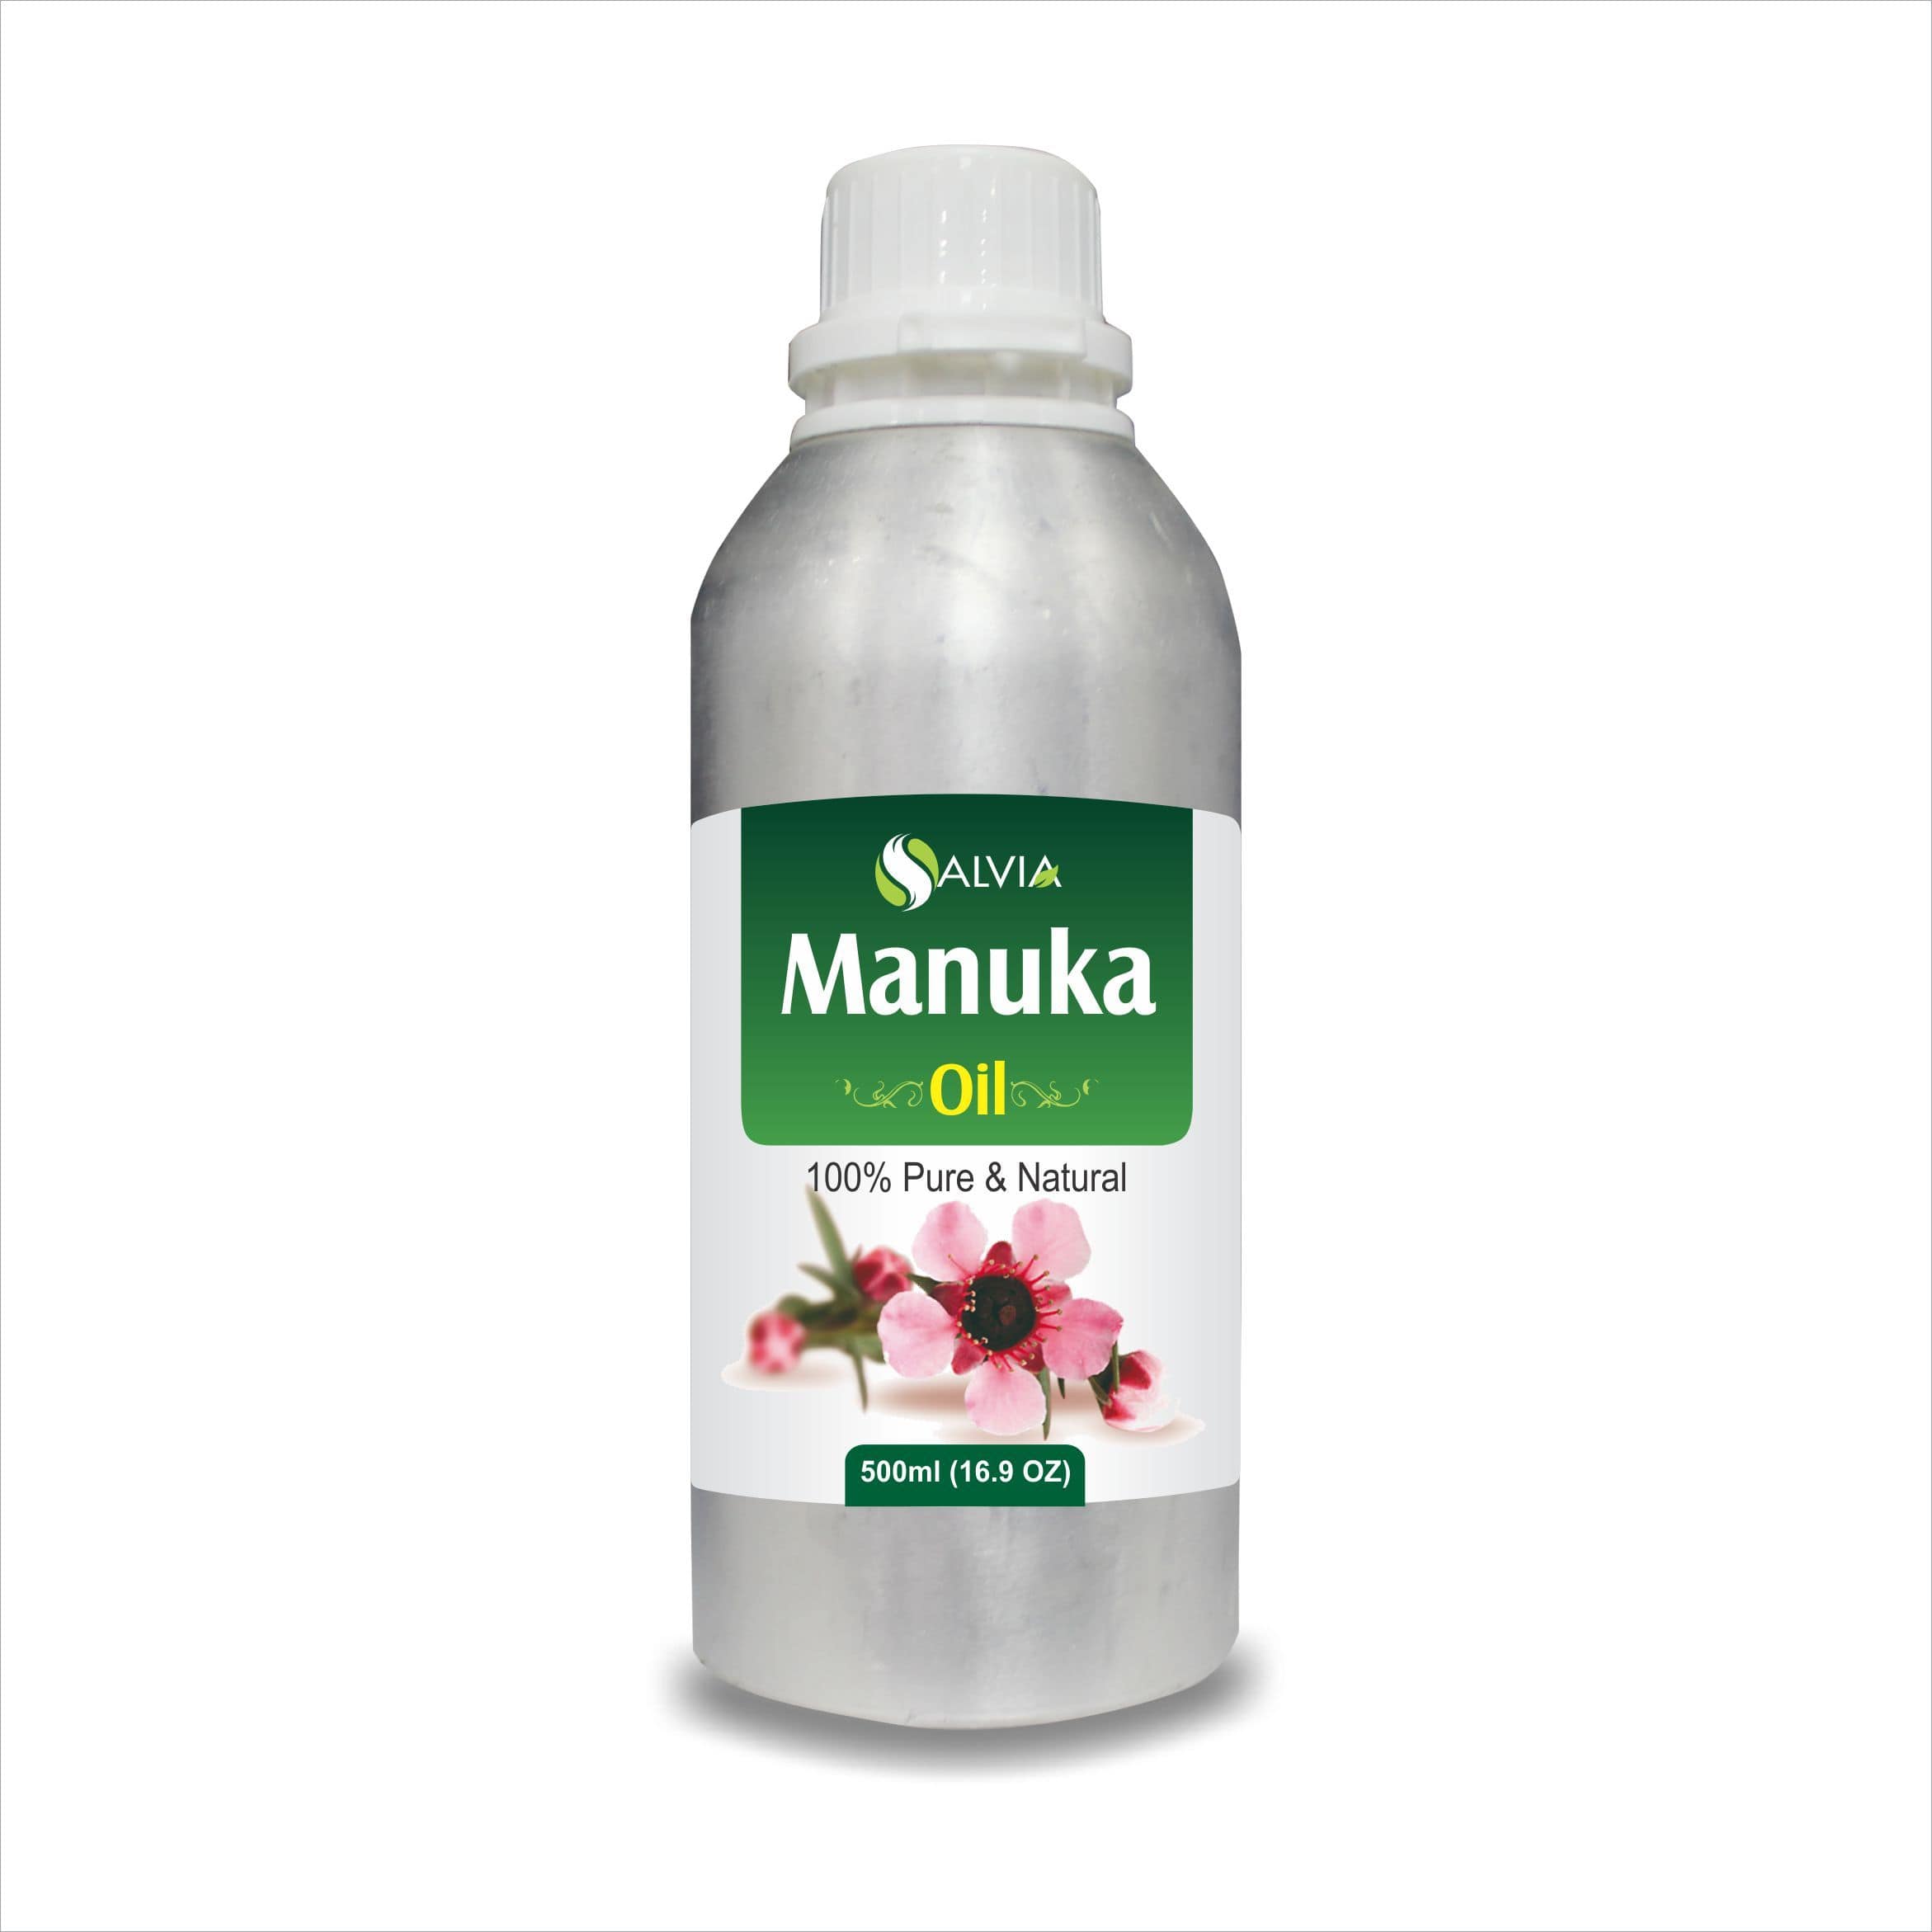 Salvia Natural Essential Oils 500ml Manuka Oil (Leptospermum-Scoparium) Natural Pure Undiluted Essential Oil Cleanses Skin, Reduces Acne, Promotes Skin Health & More